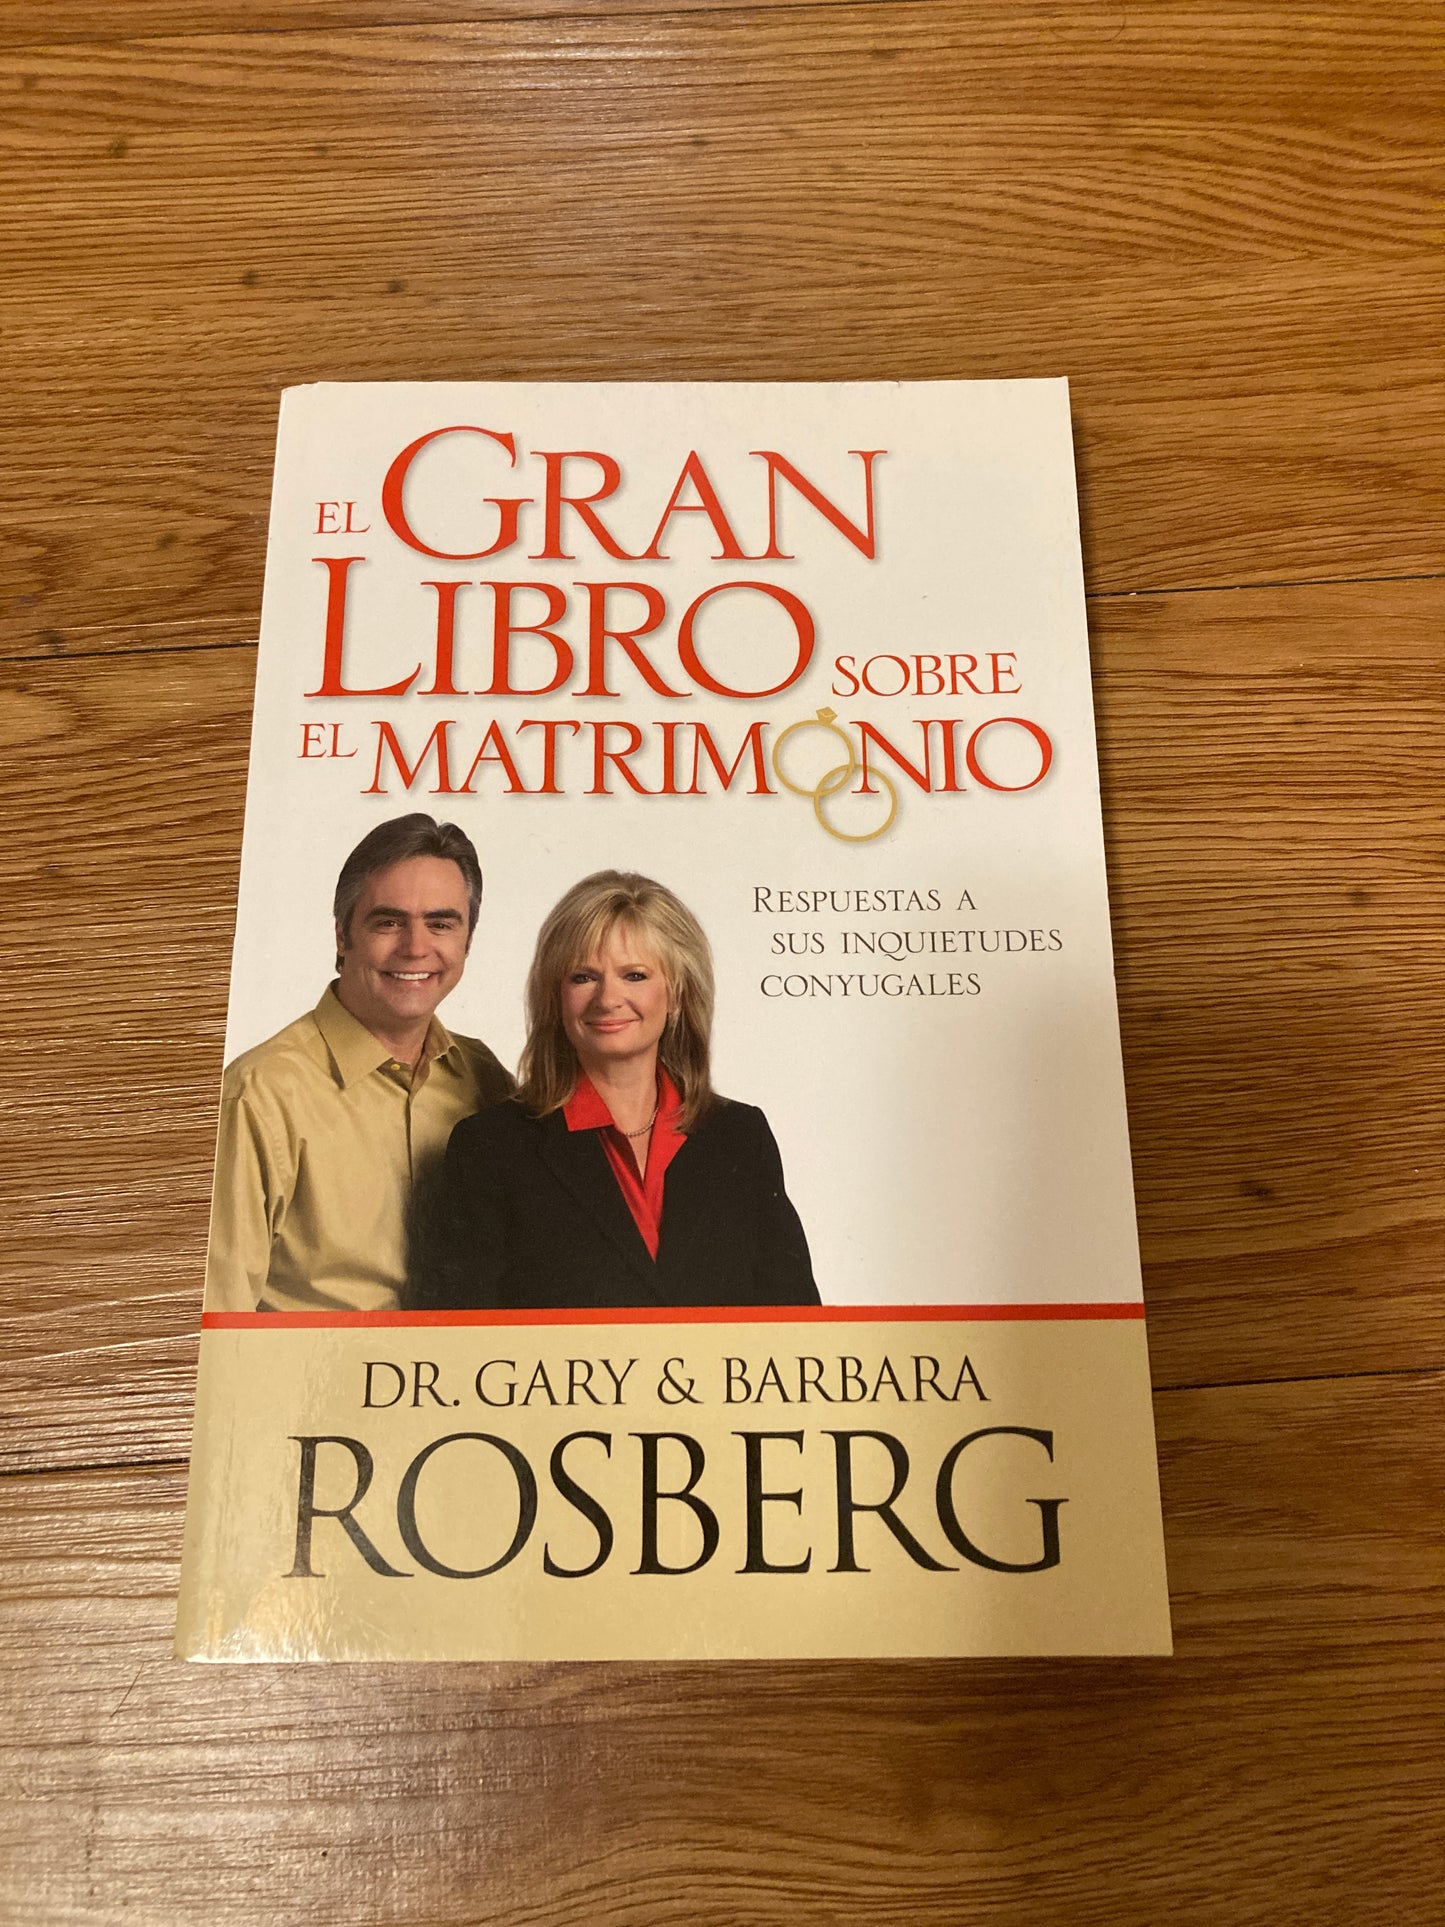 El gran libro sobre el matrimonio (Spanish Edition)